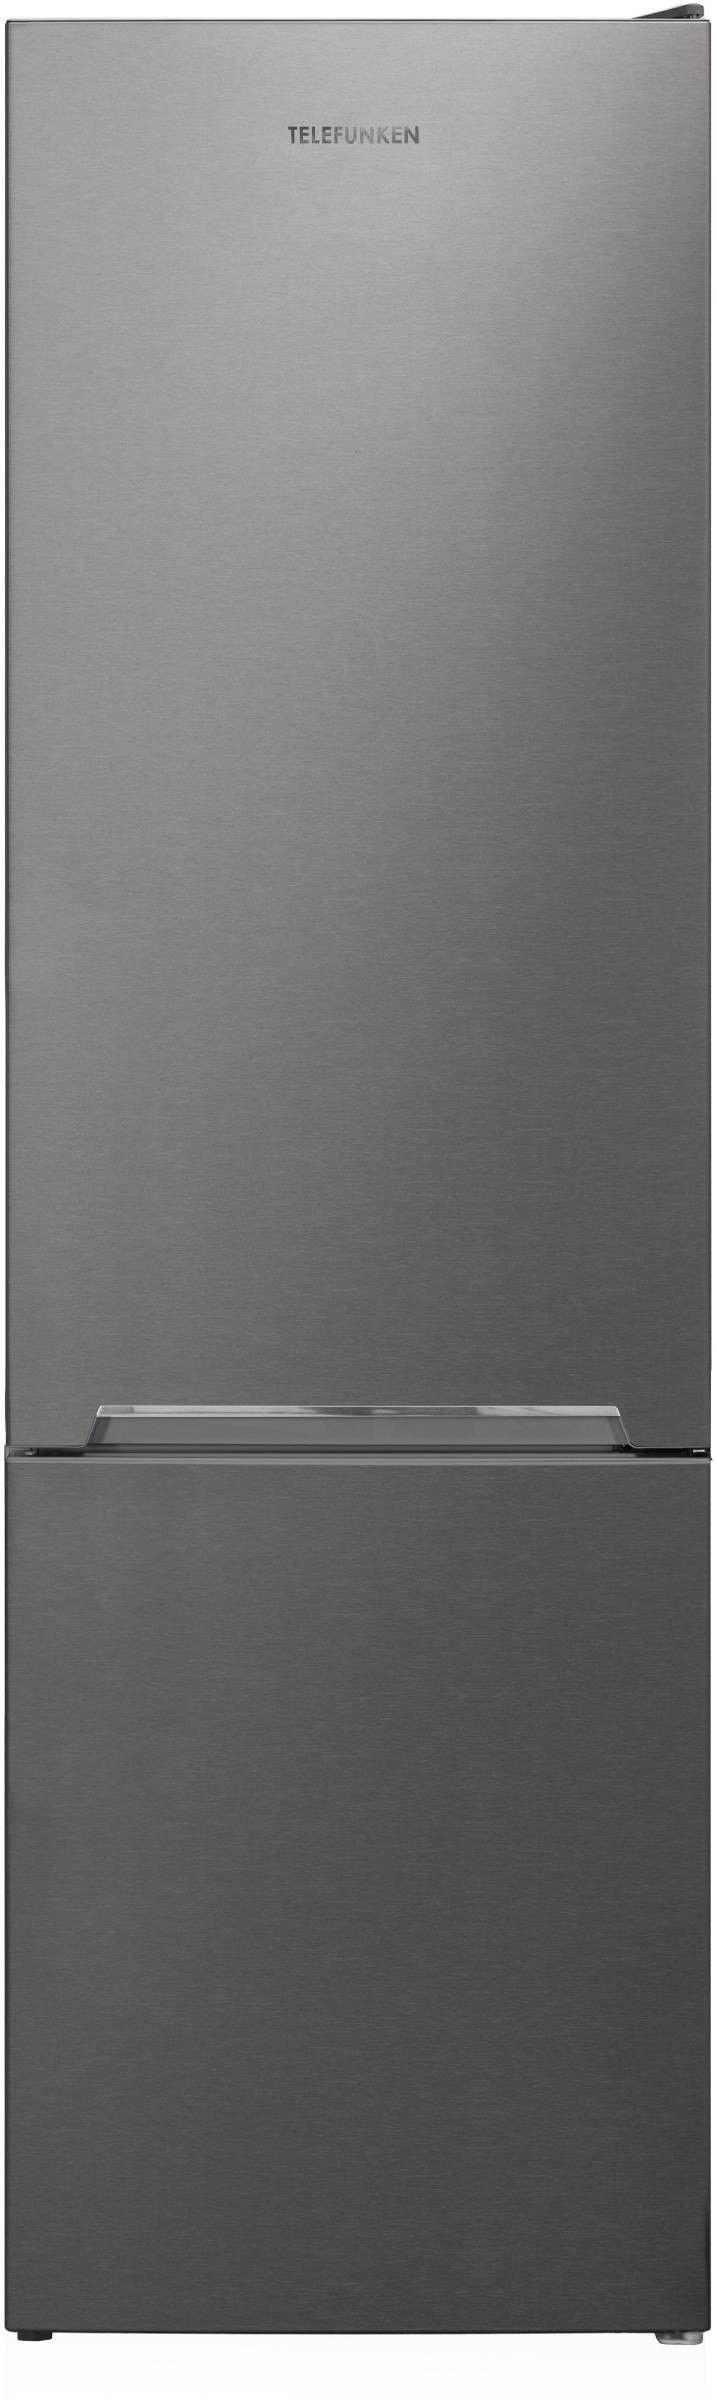 TELEFUNKEN Réfrigérateur congélateur bas NO Frost 270L Gris - NFC264X